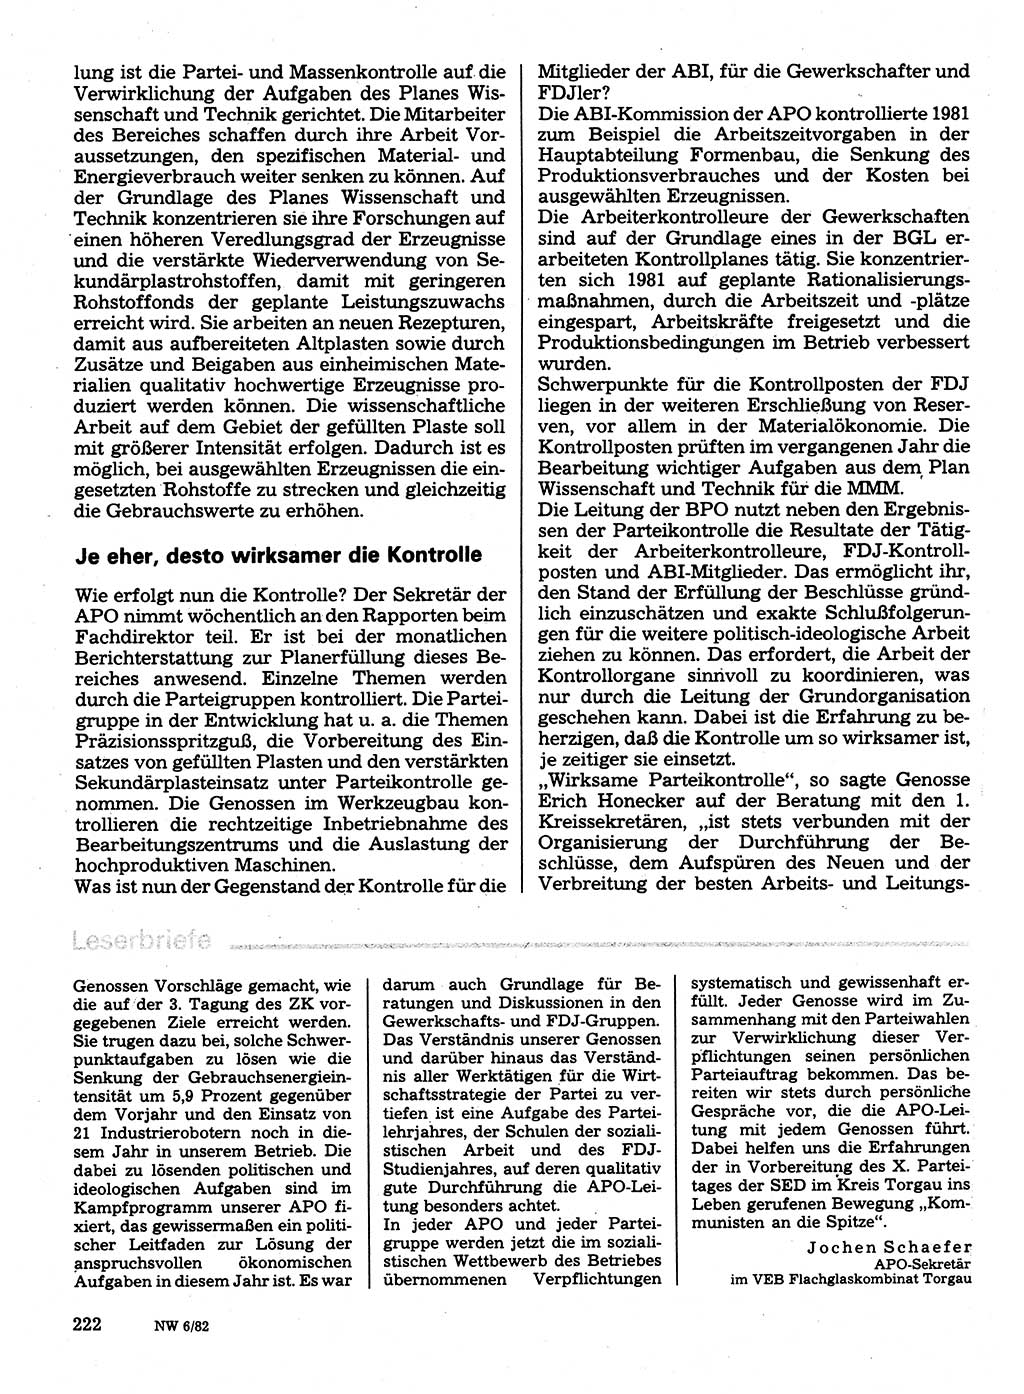 Neuer Weg (NW), Organ des Zentralkomitees (ZK) der SED (Sozialistische Einheitspartei Deutschlands) für Fragen des Parteilebens, 37. Jahrgang [Deutsche Demokratische Republik (DDR)] 1982, Seite 222 (NW ZK SED DDR 1982, S. 222)